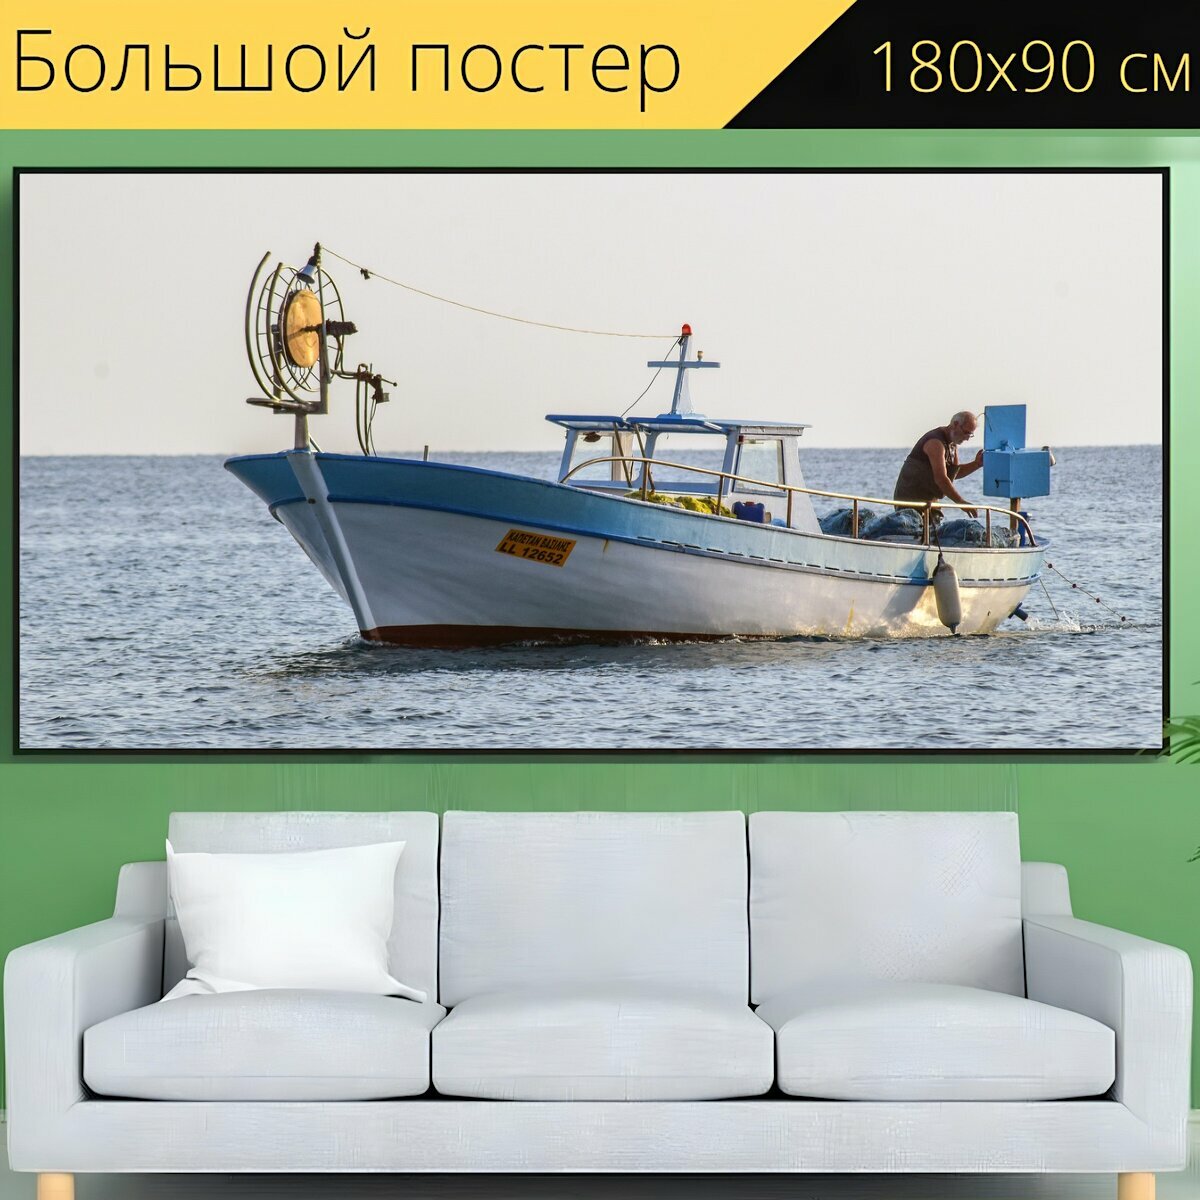 Большой постер "Рыболовная лодка, рыбак, ловит рыбу" 180 x 90 см. для интерьера